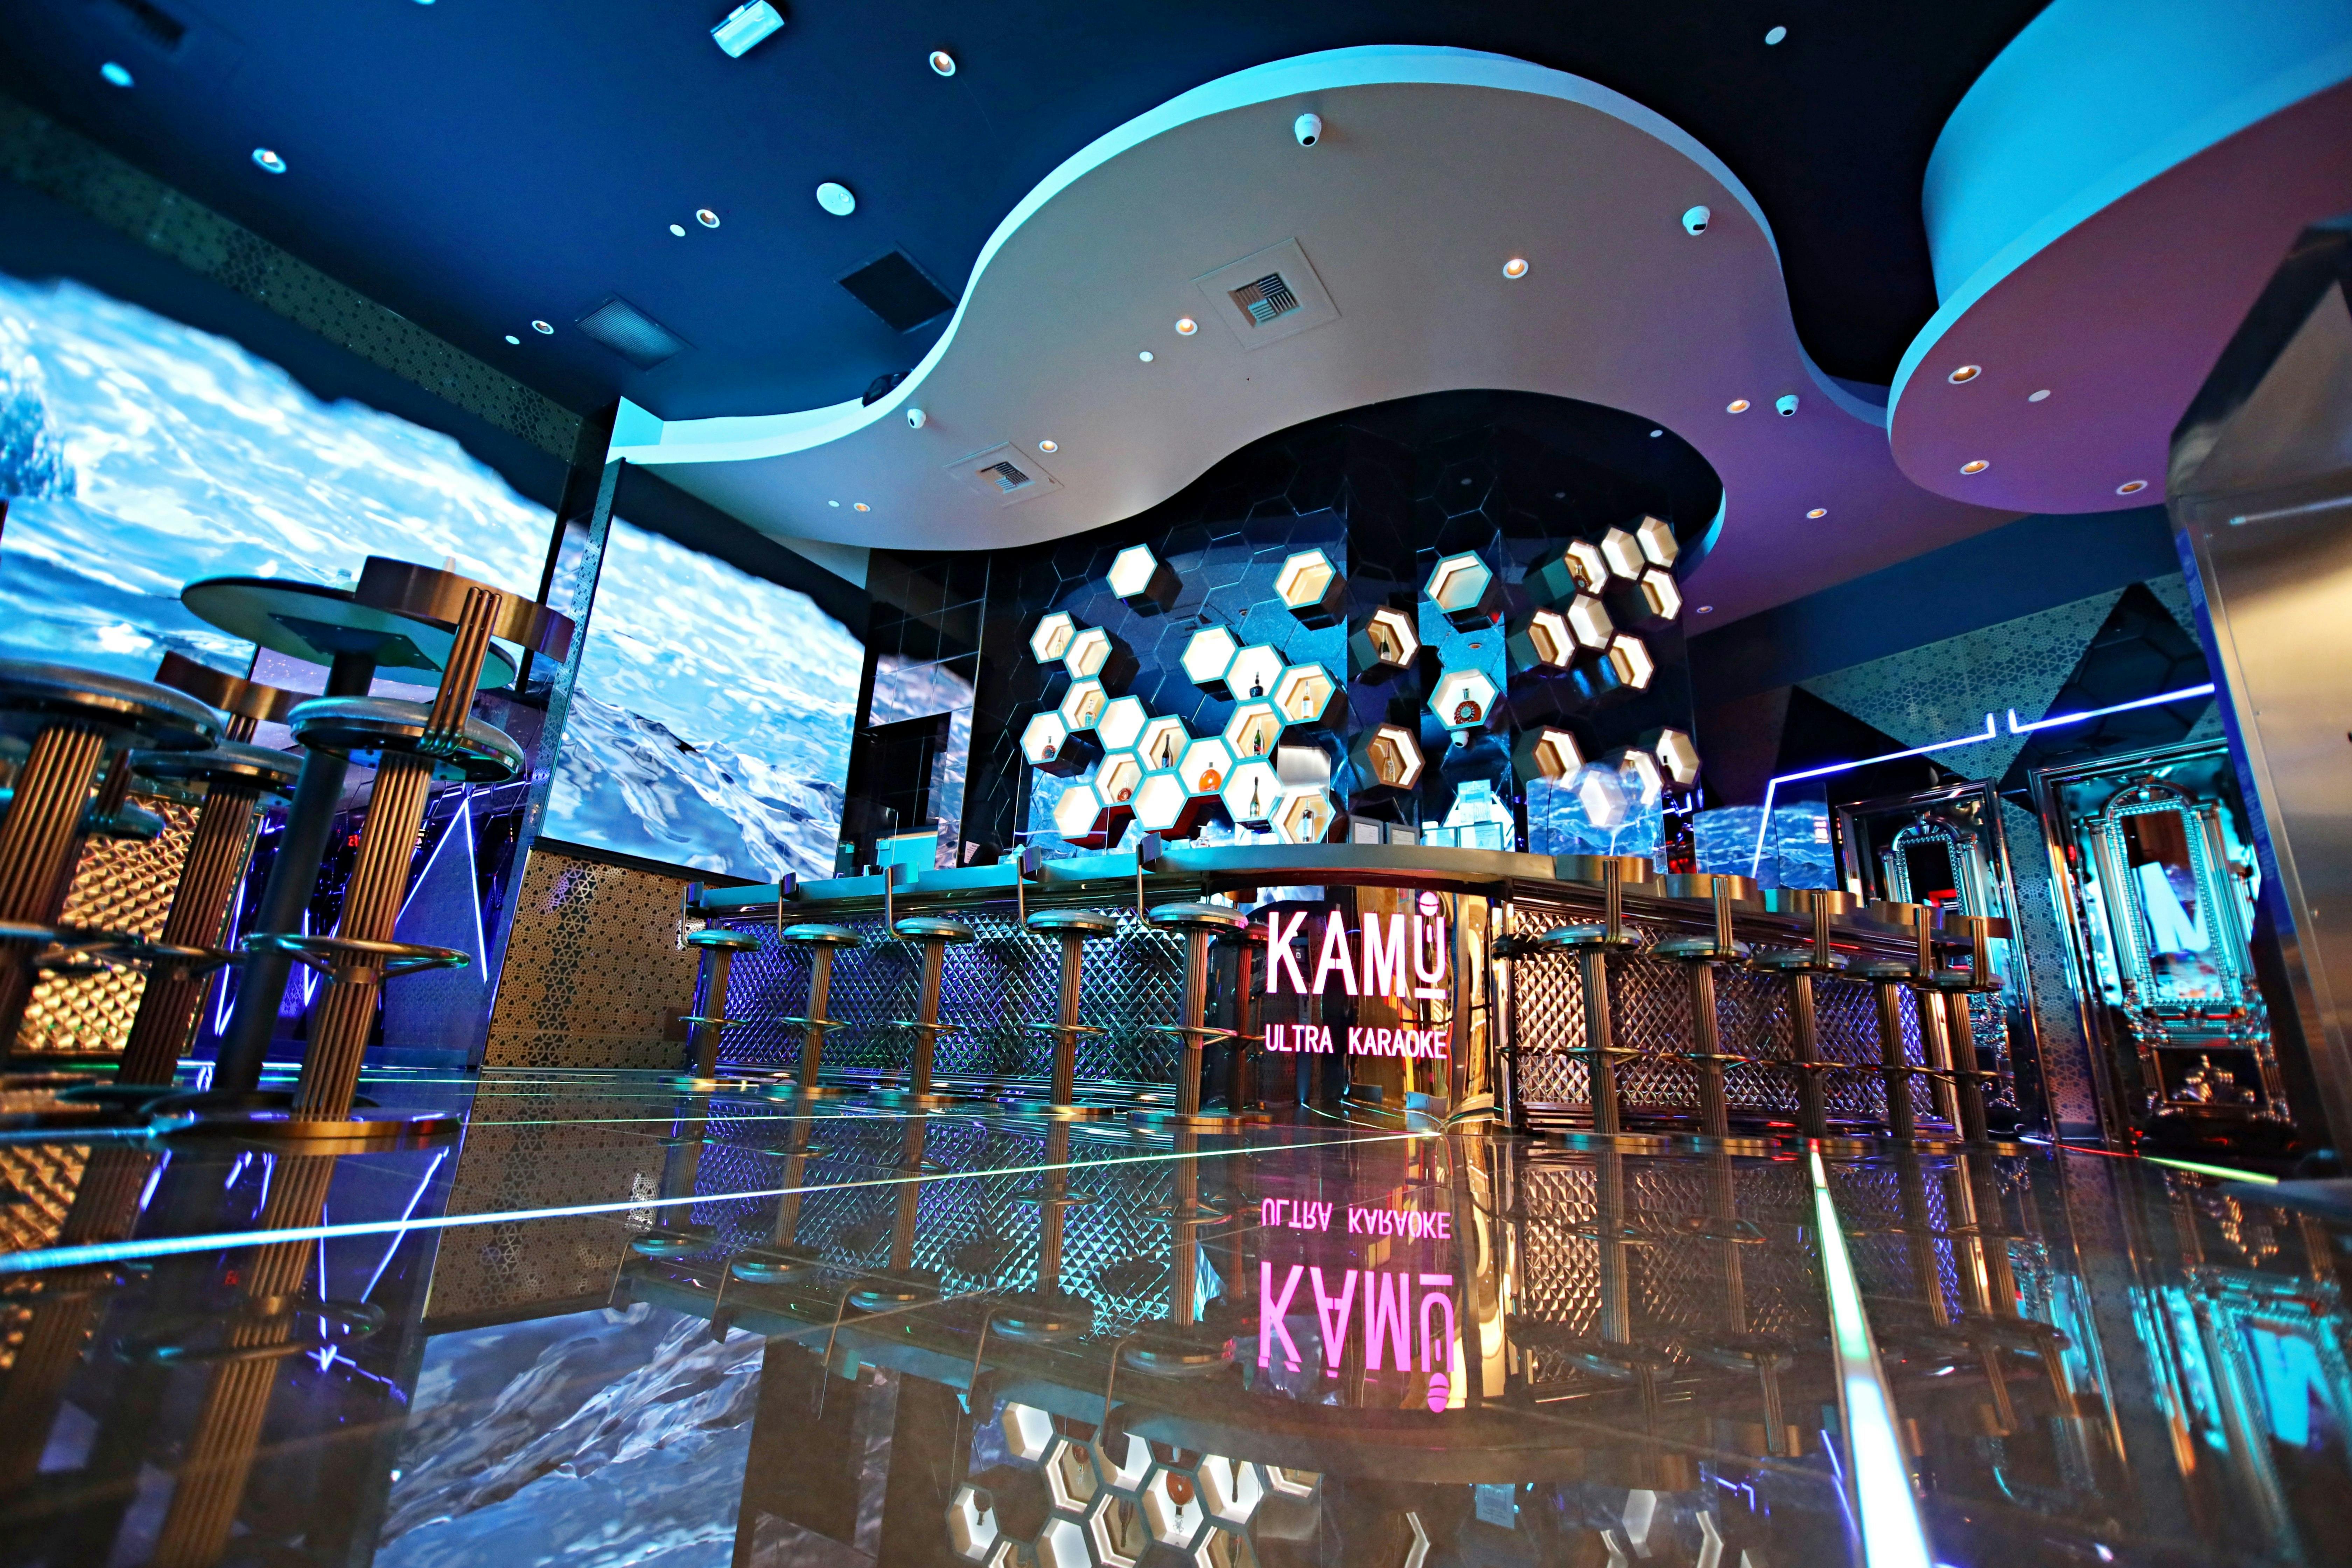 Tickets to KAMU Ultra Karaoke in Las Vegas Musement